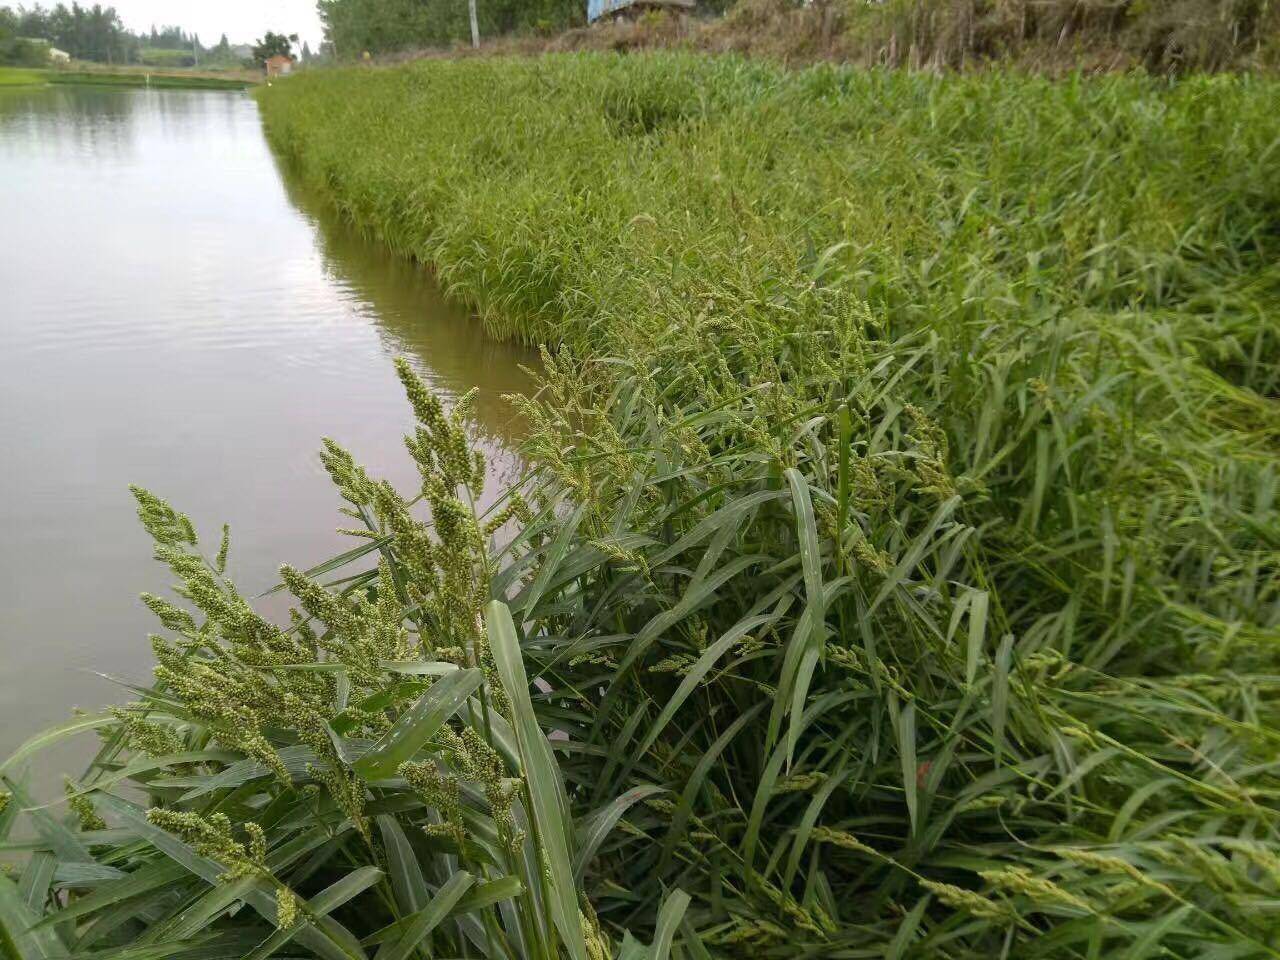 小米草喜欢温暖湿润的气候,小米草在幼草阶段,耐水淹,抗水力较强